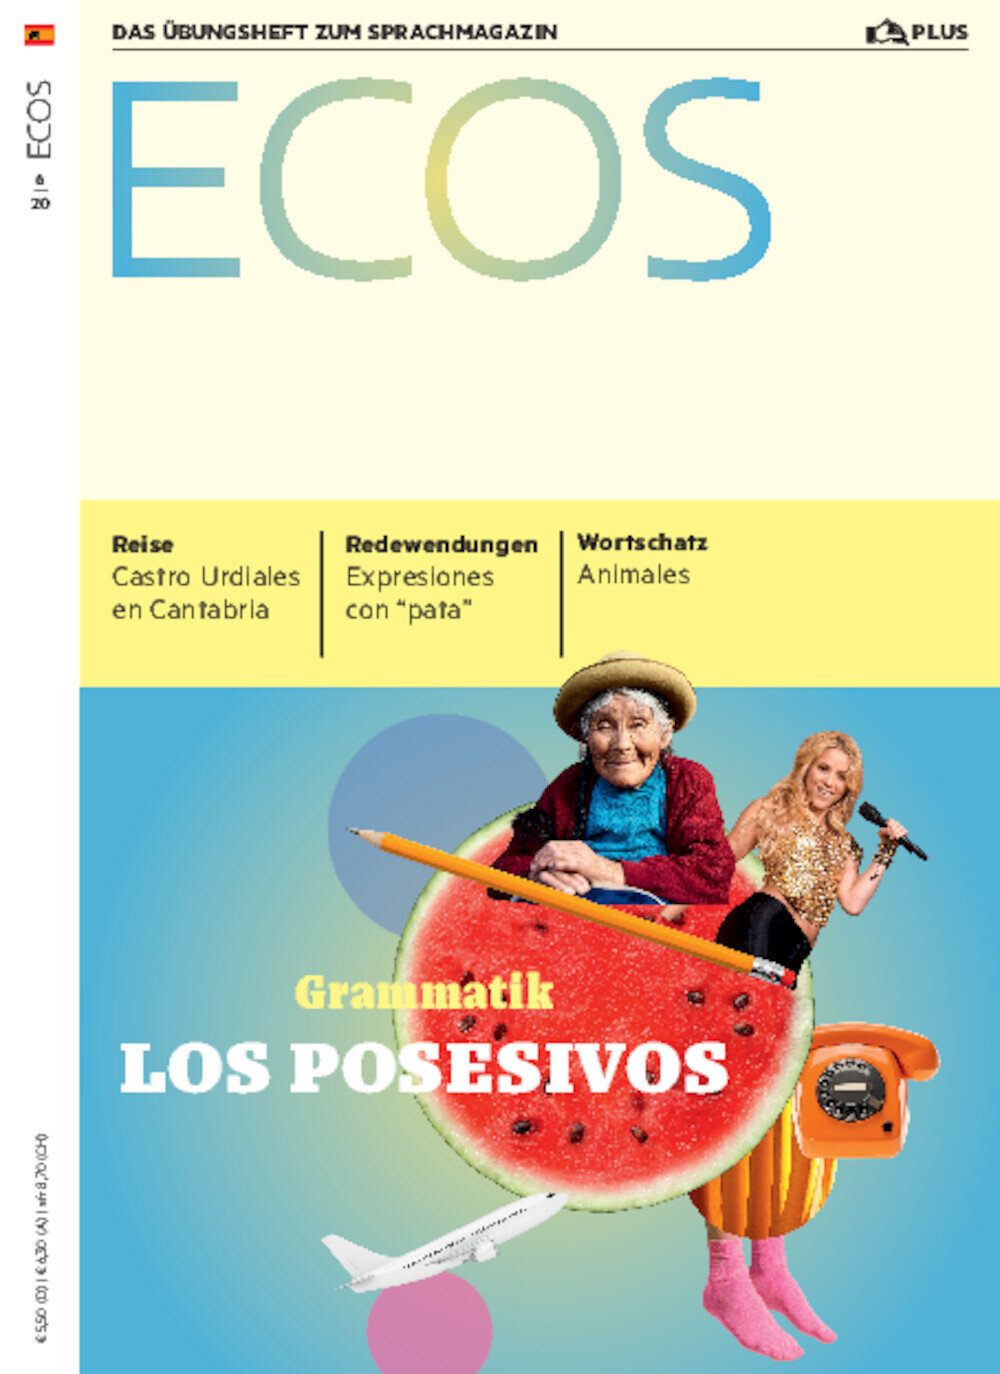 ECOS Übungsheft Digital 06/2020